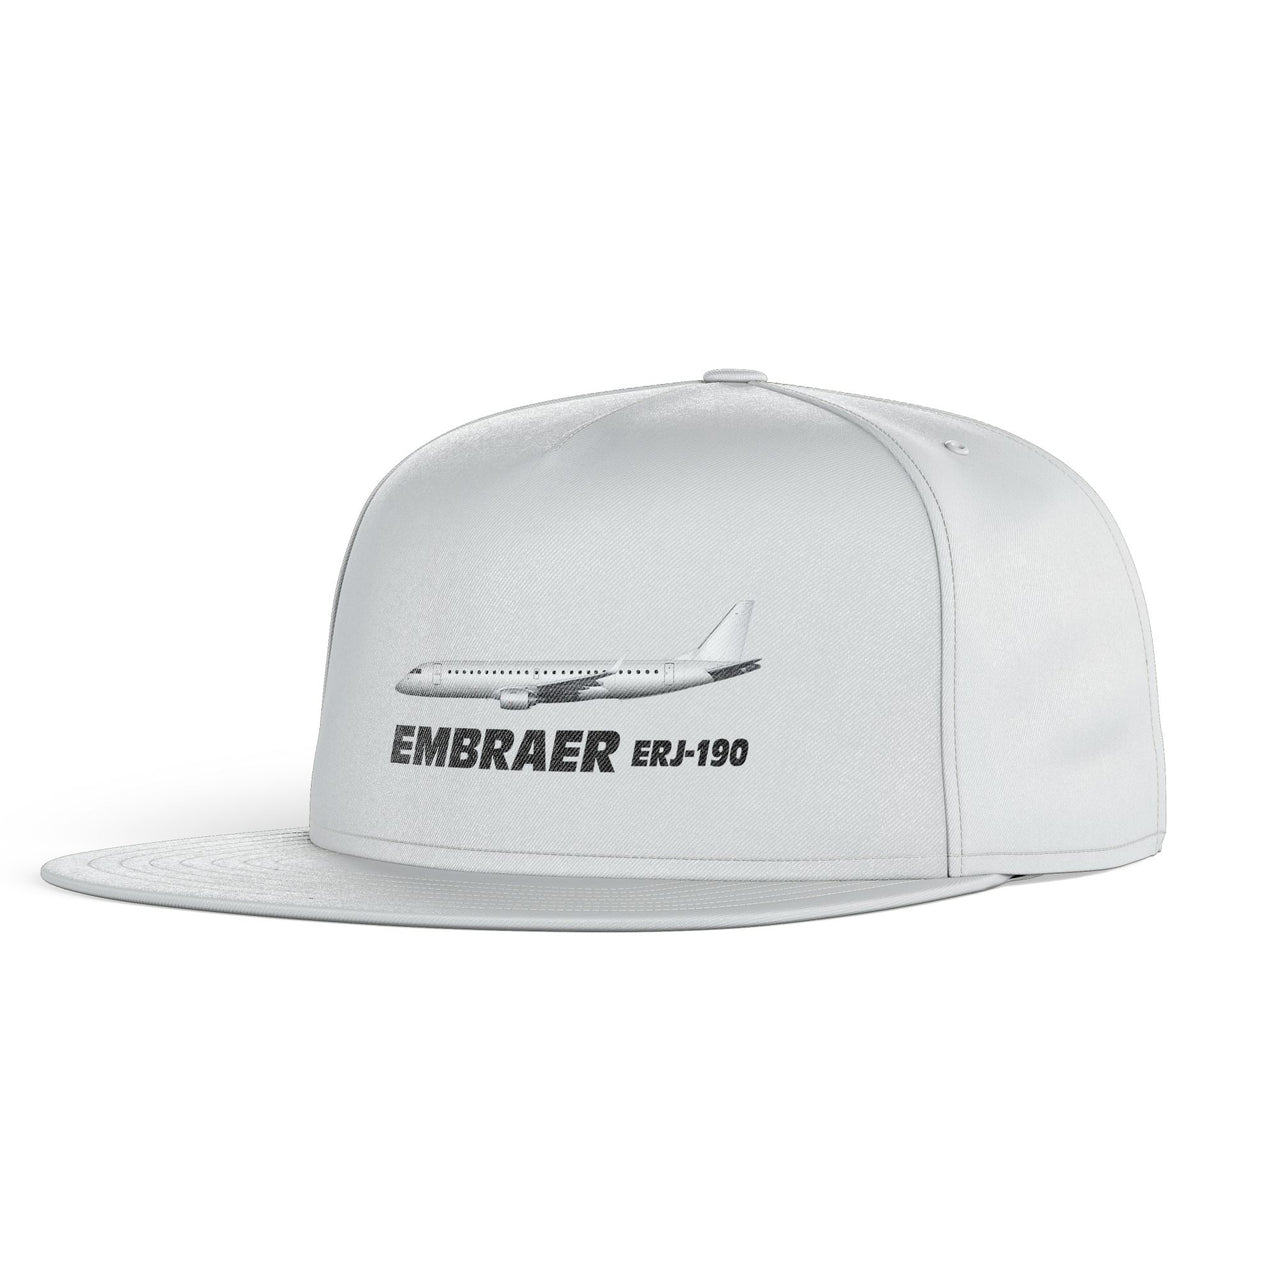 The Embraer ERJ-190 Designed Snapback Caps & Hats